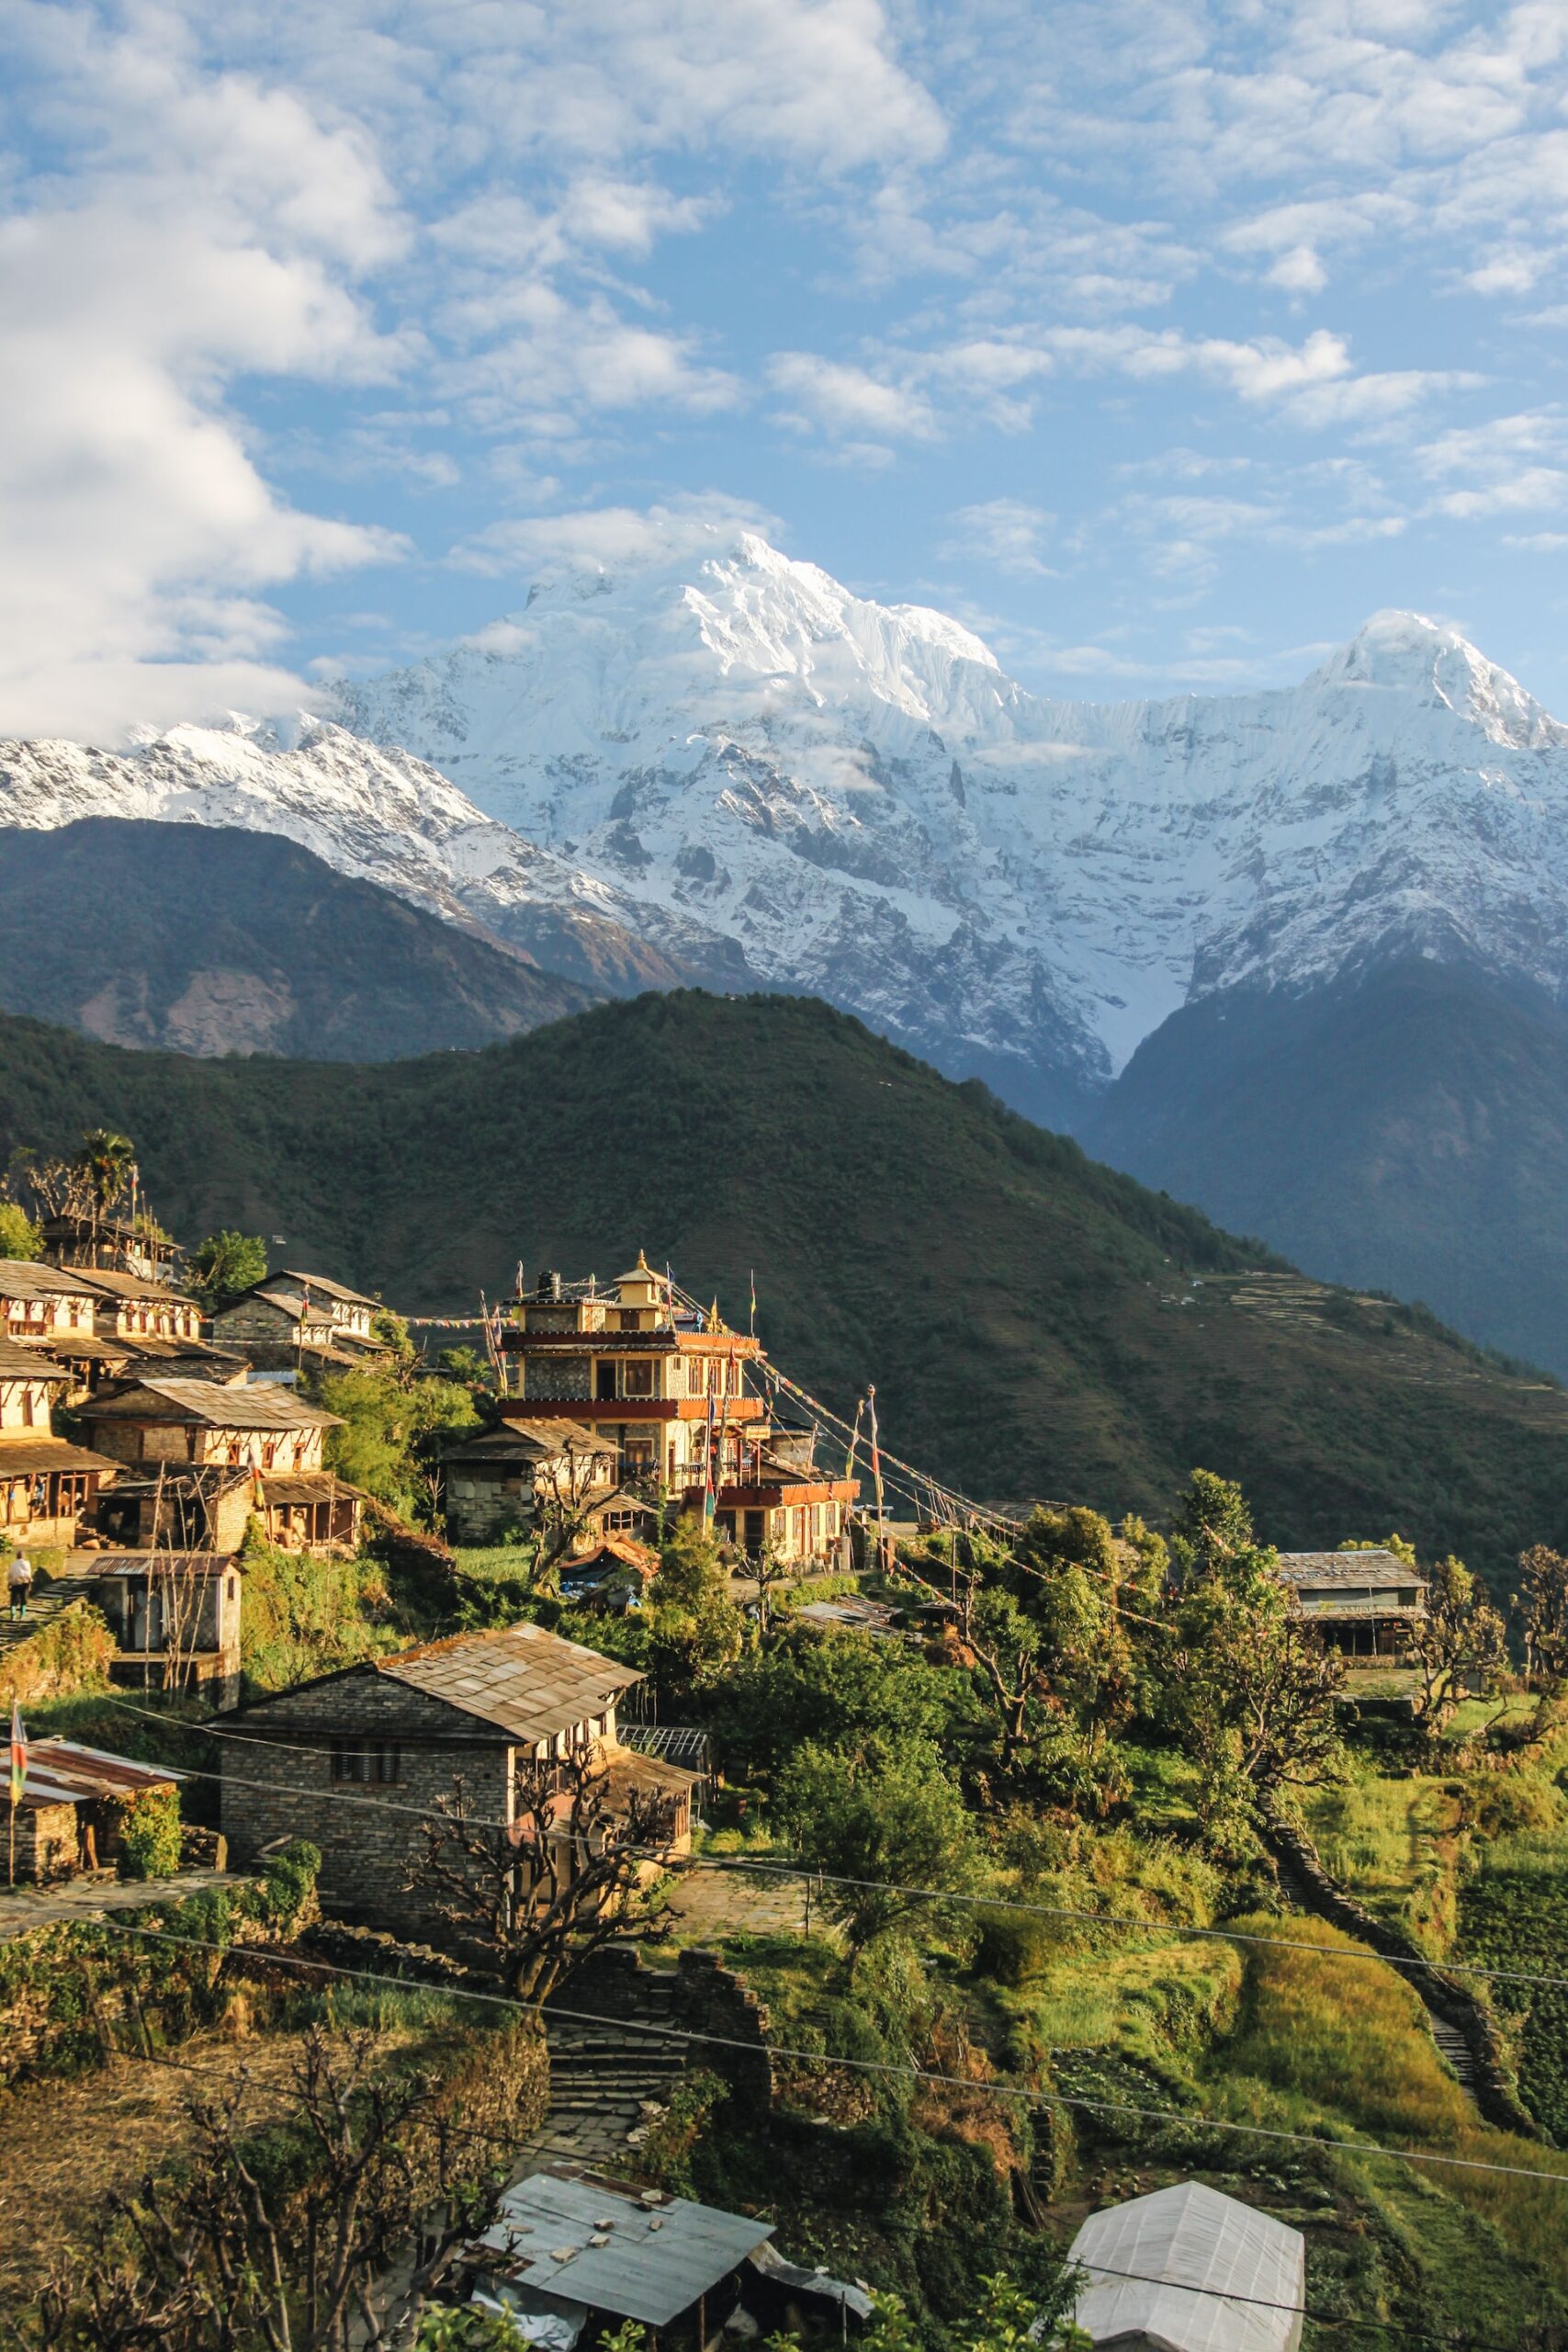 Village of Annapurna, Narchyang, Nepal. Photo by Giuseppe Mondì on Unsplash.